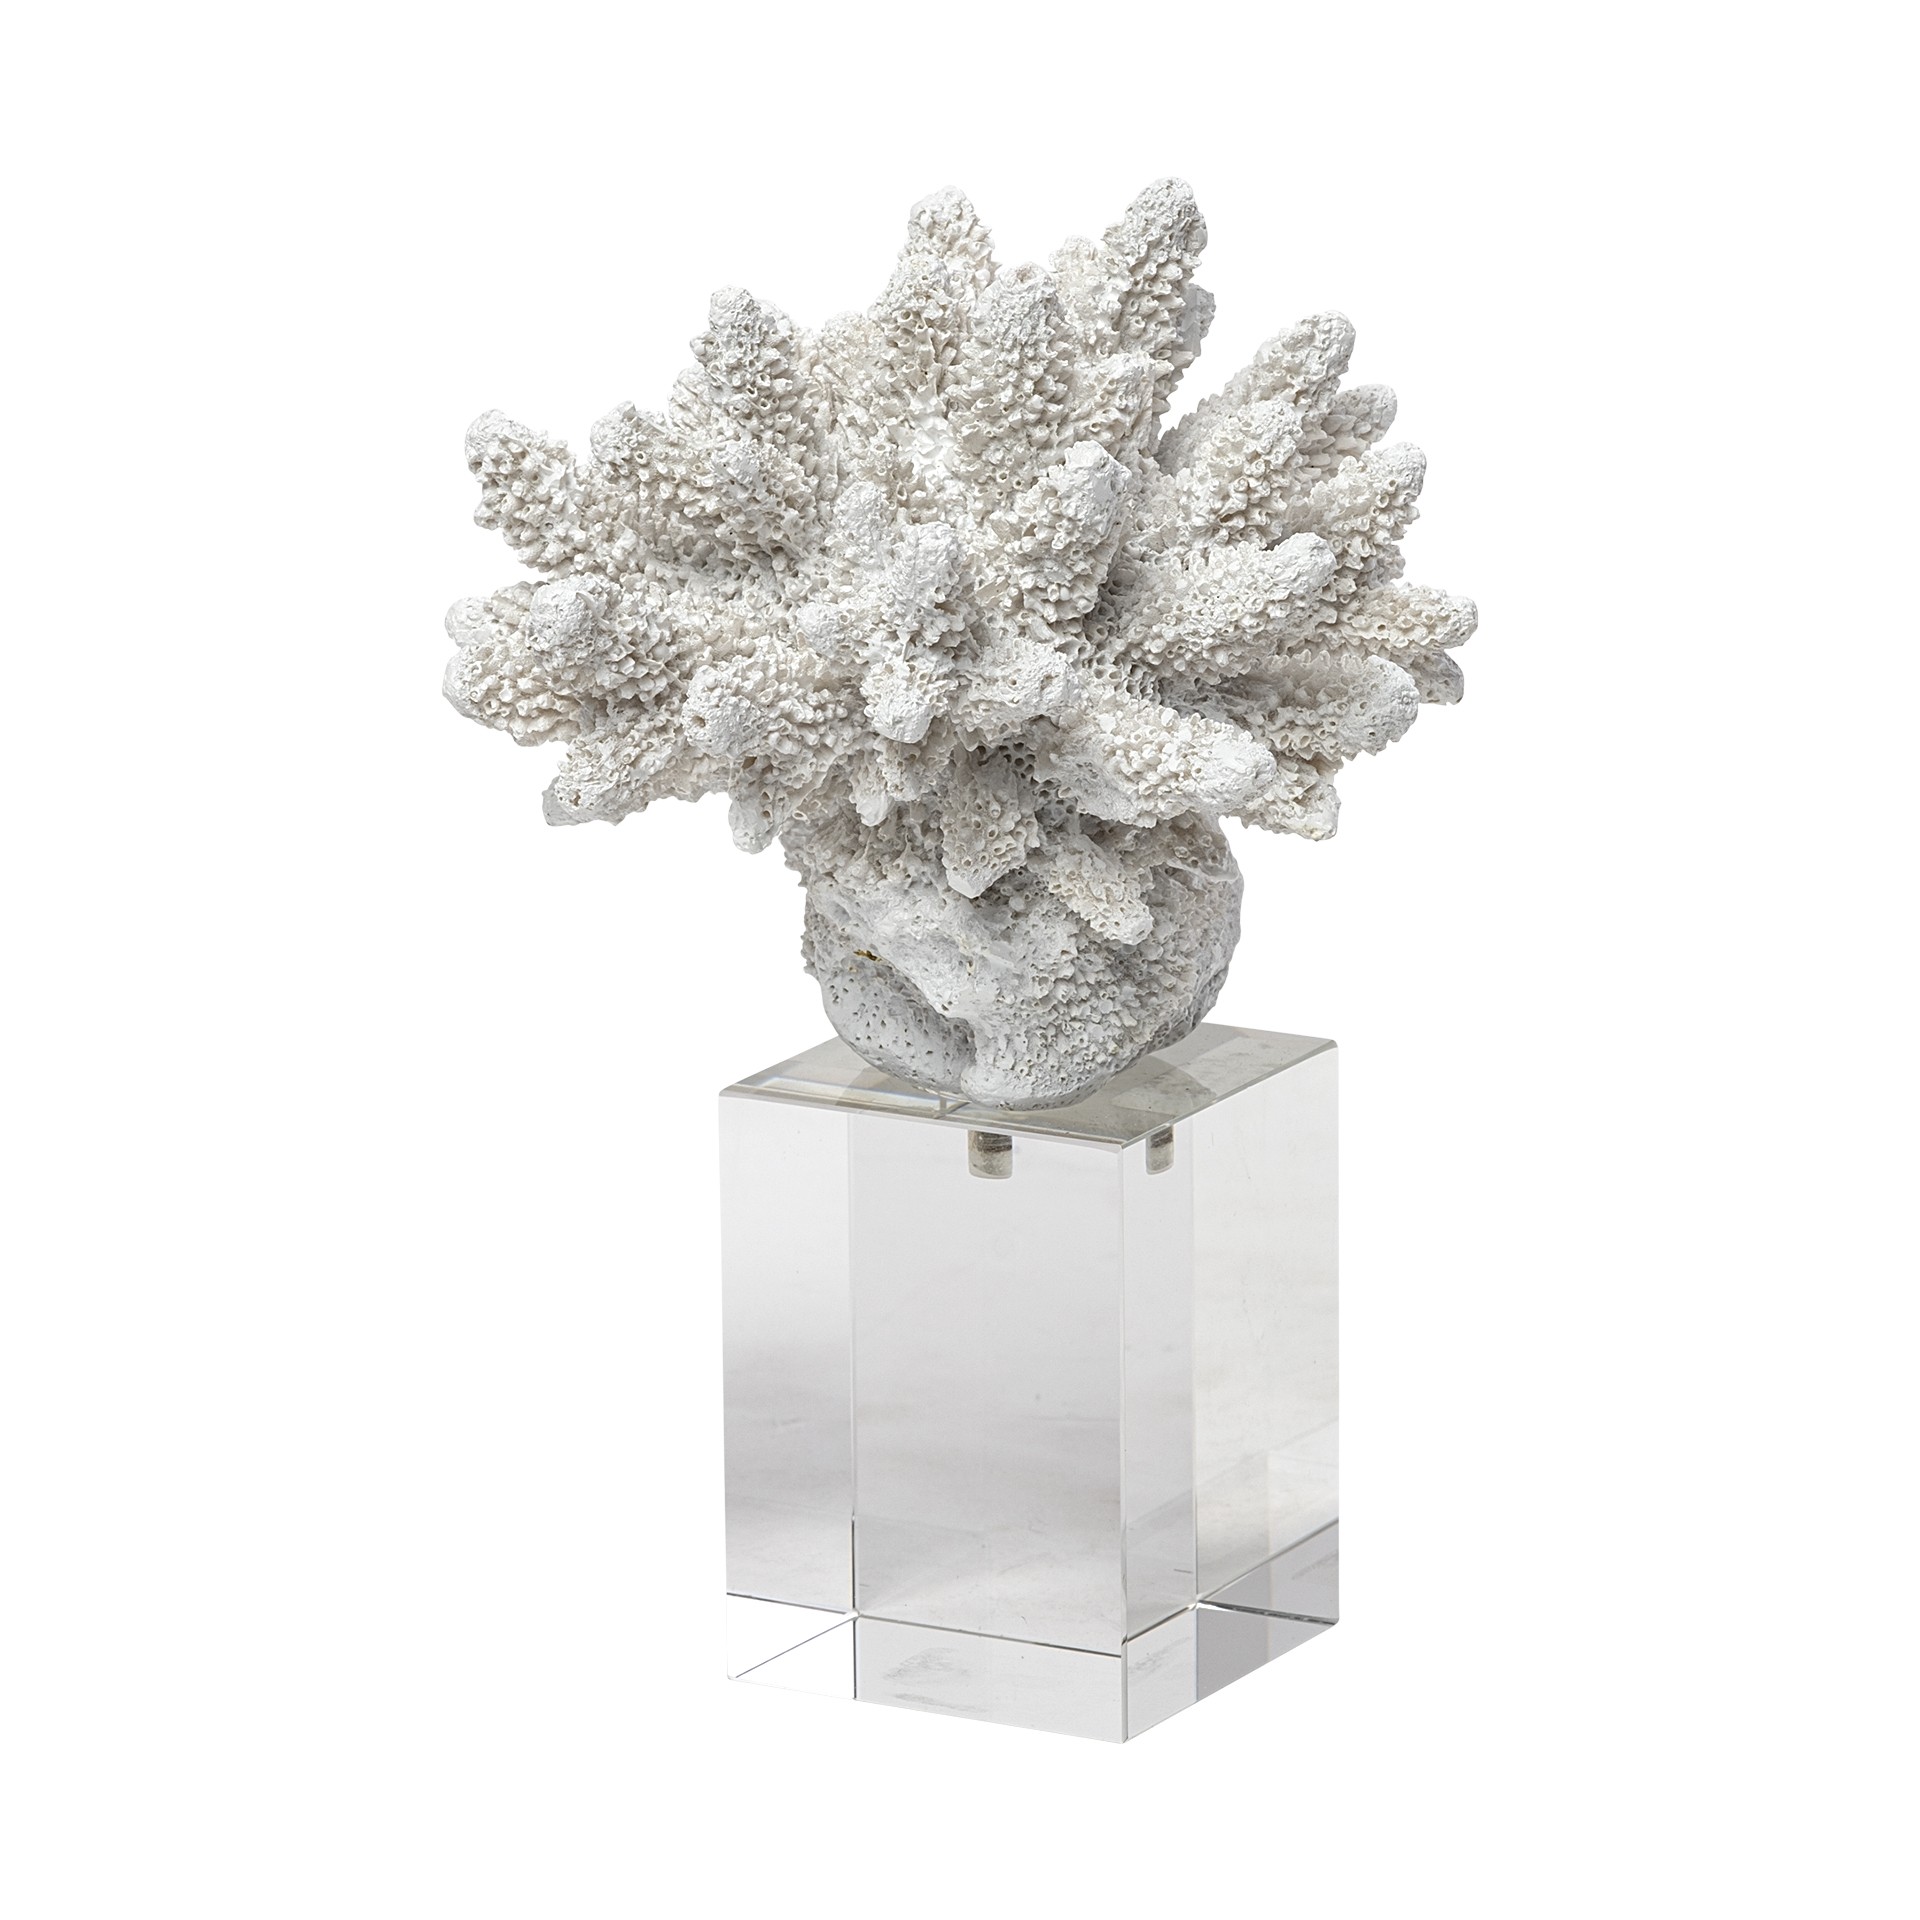 6" White Contempo Coral and Glass Sculpture